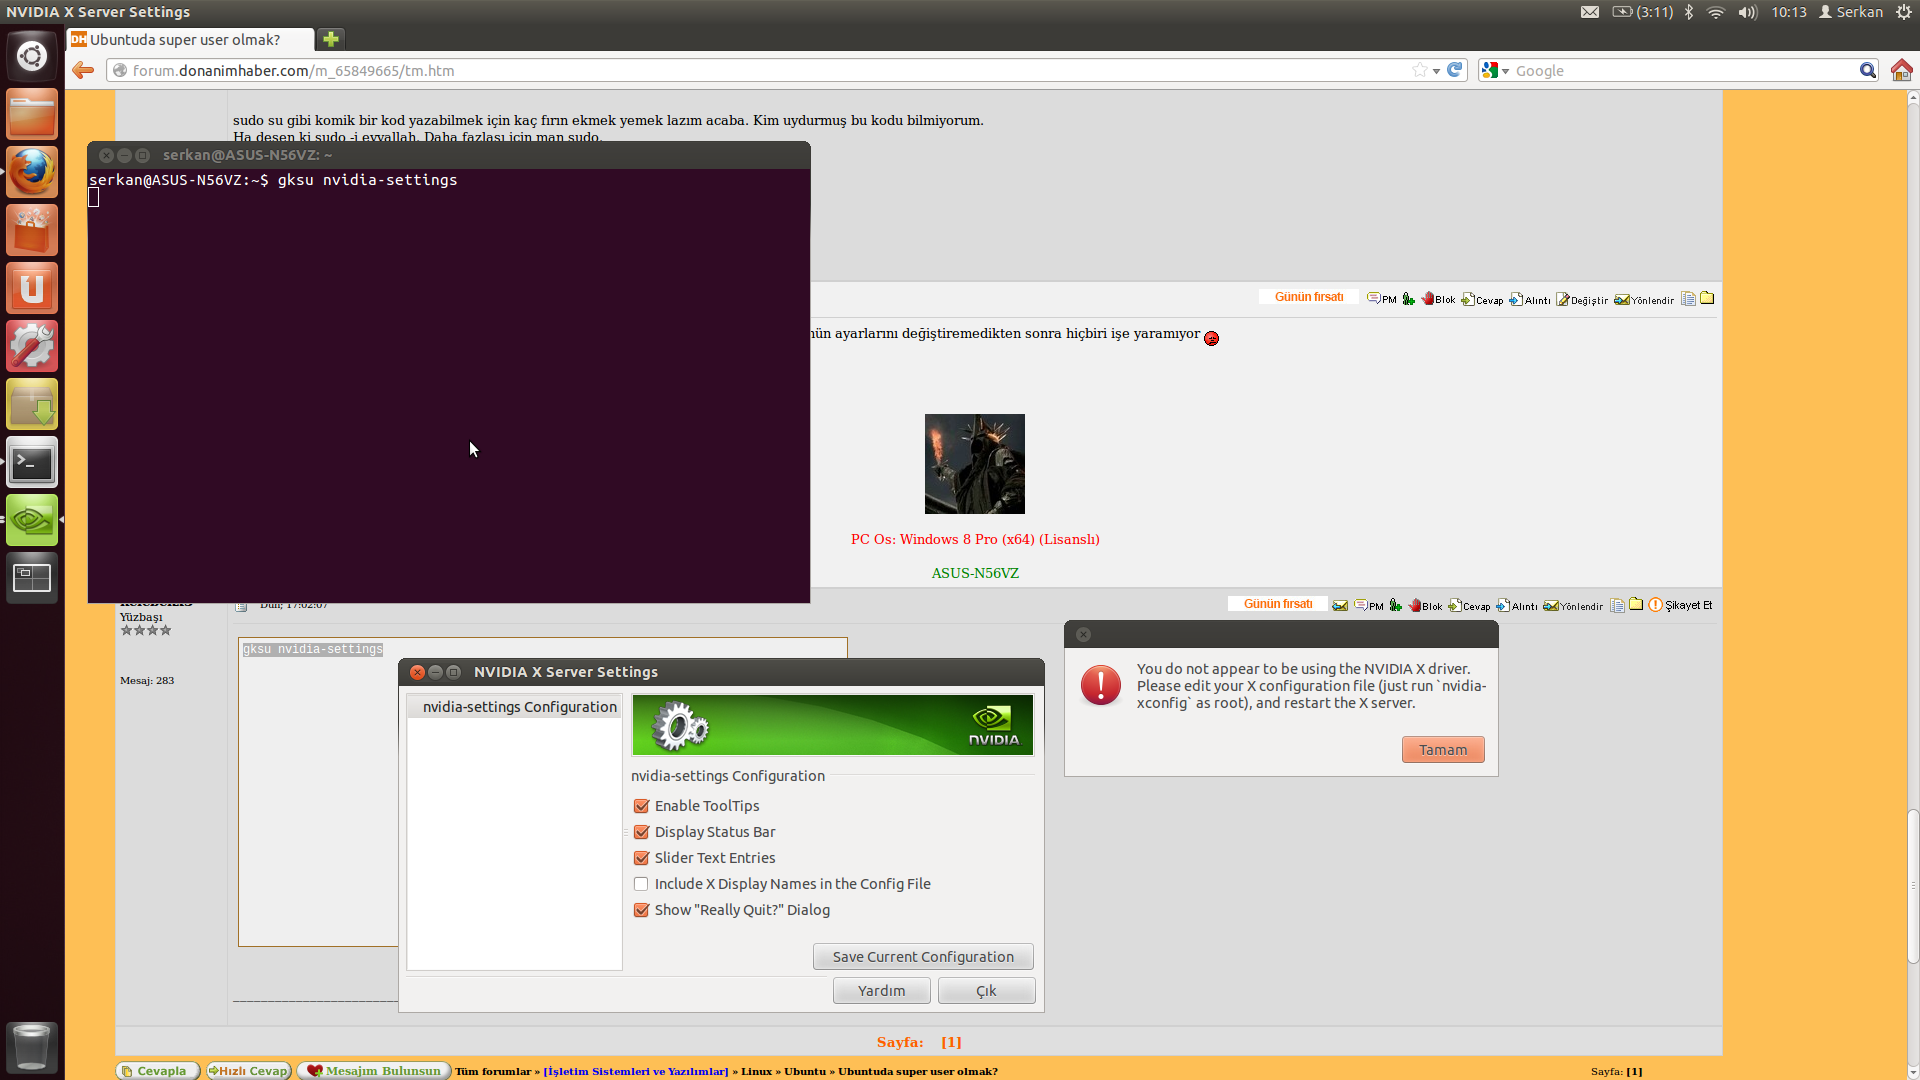  Ubuntuda super user olmak?